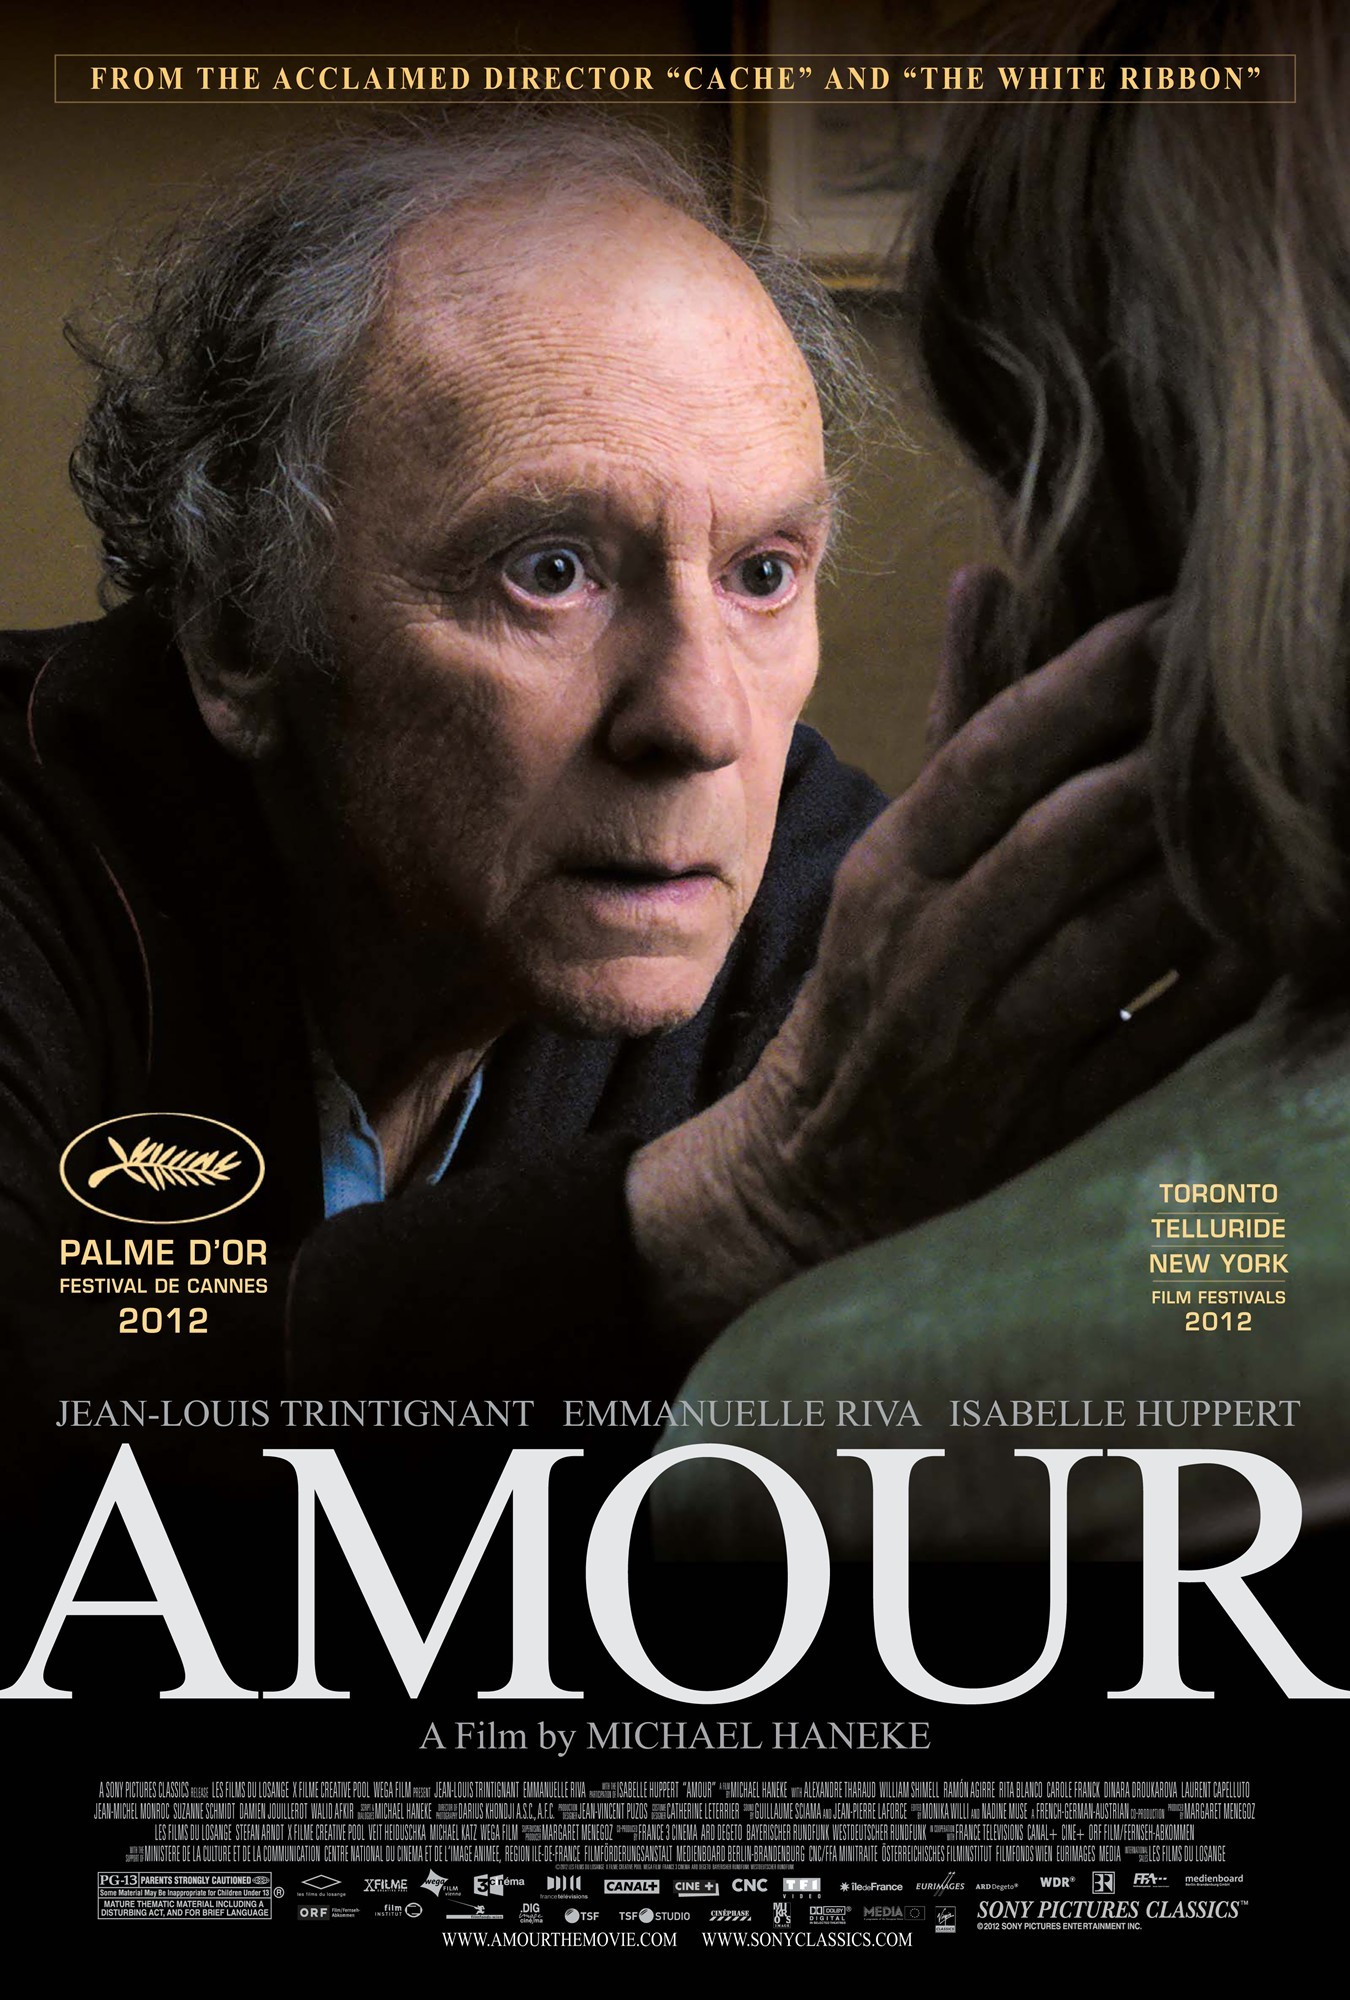 “Amour” llevó al éxtasis a los críticos en EEUU